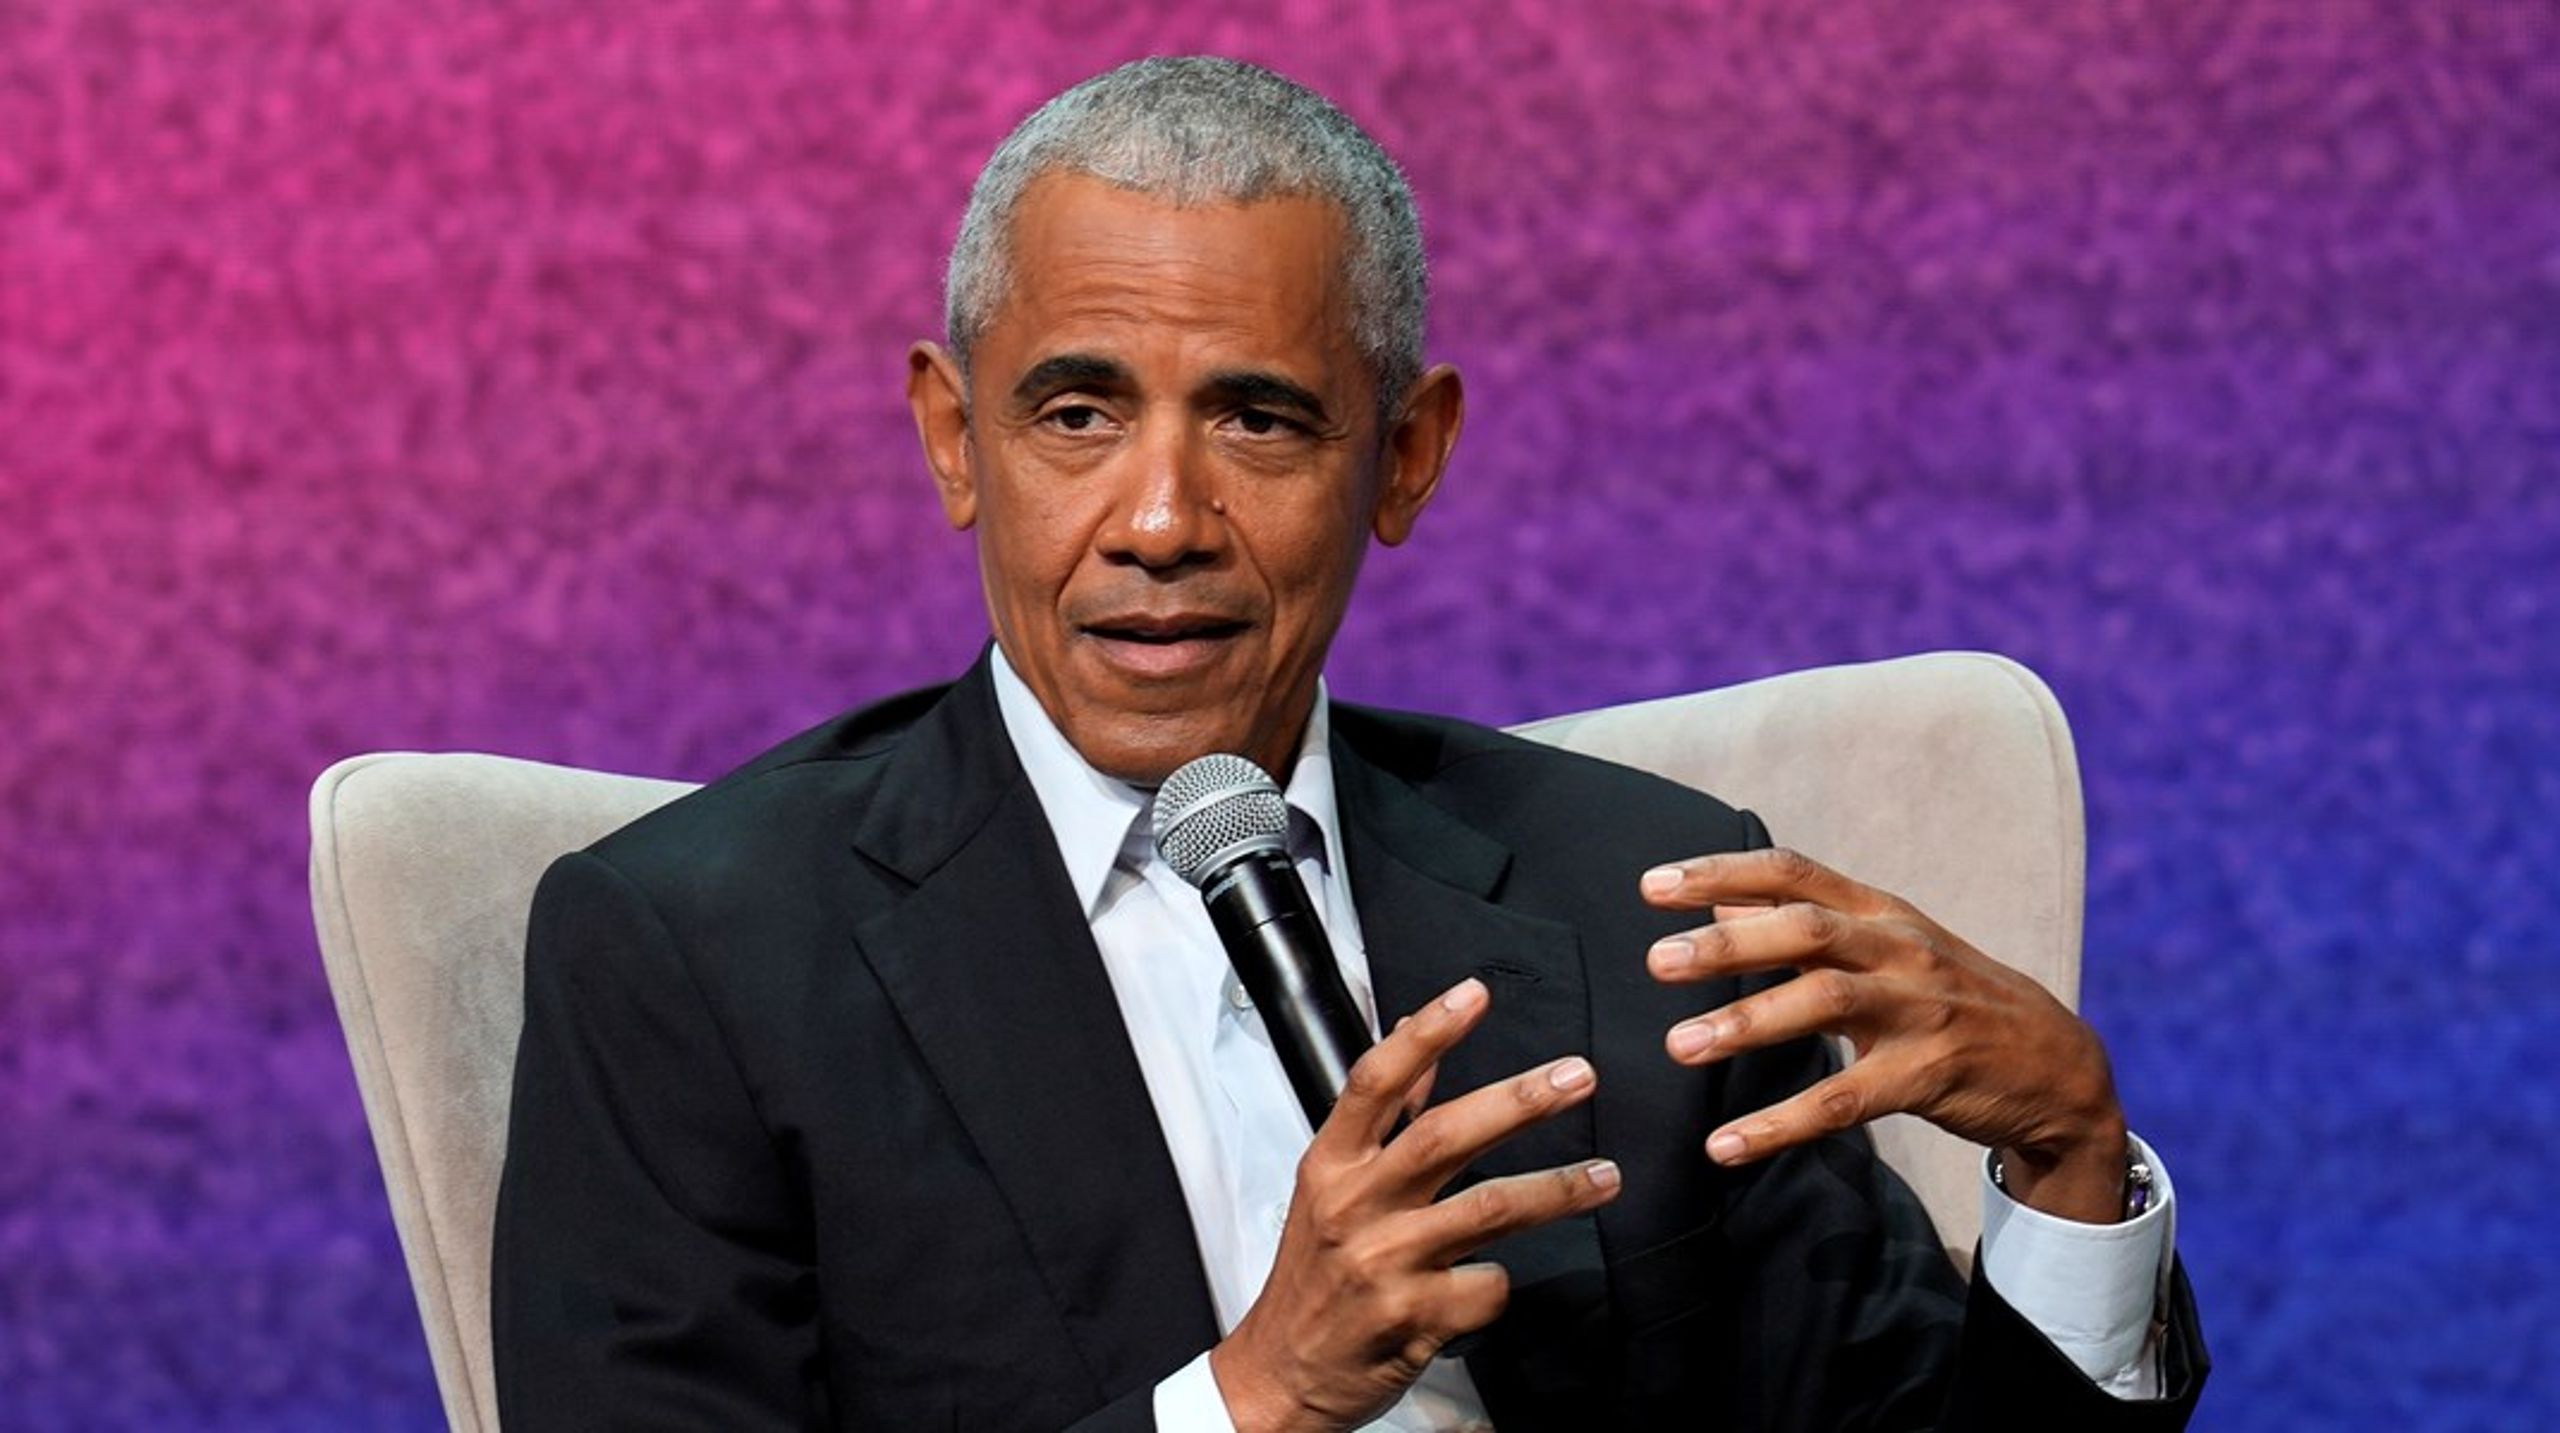 Ugen i dansk politik byder på internationalt besøg i Næstved. USA's tidligere præsident Barack Obama besøger nemlig Arena Næstved til en samtale om globale udfordringer og lokale muligheder.